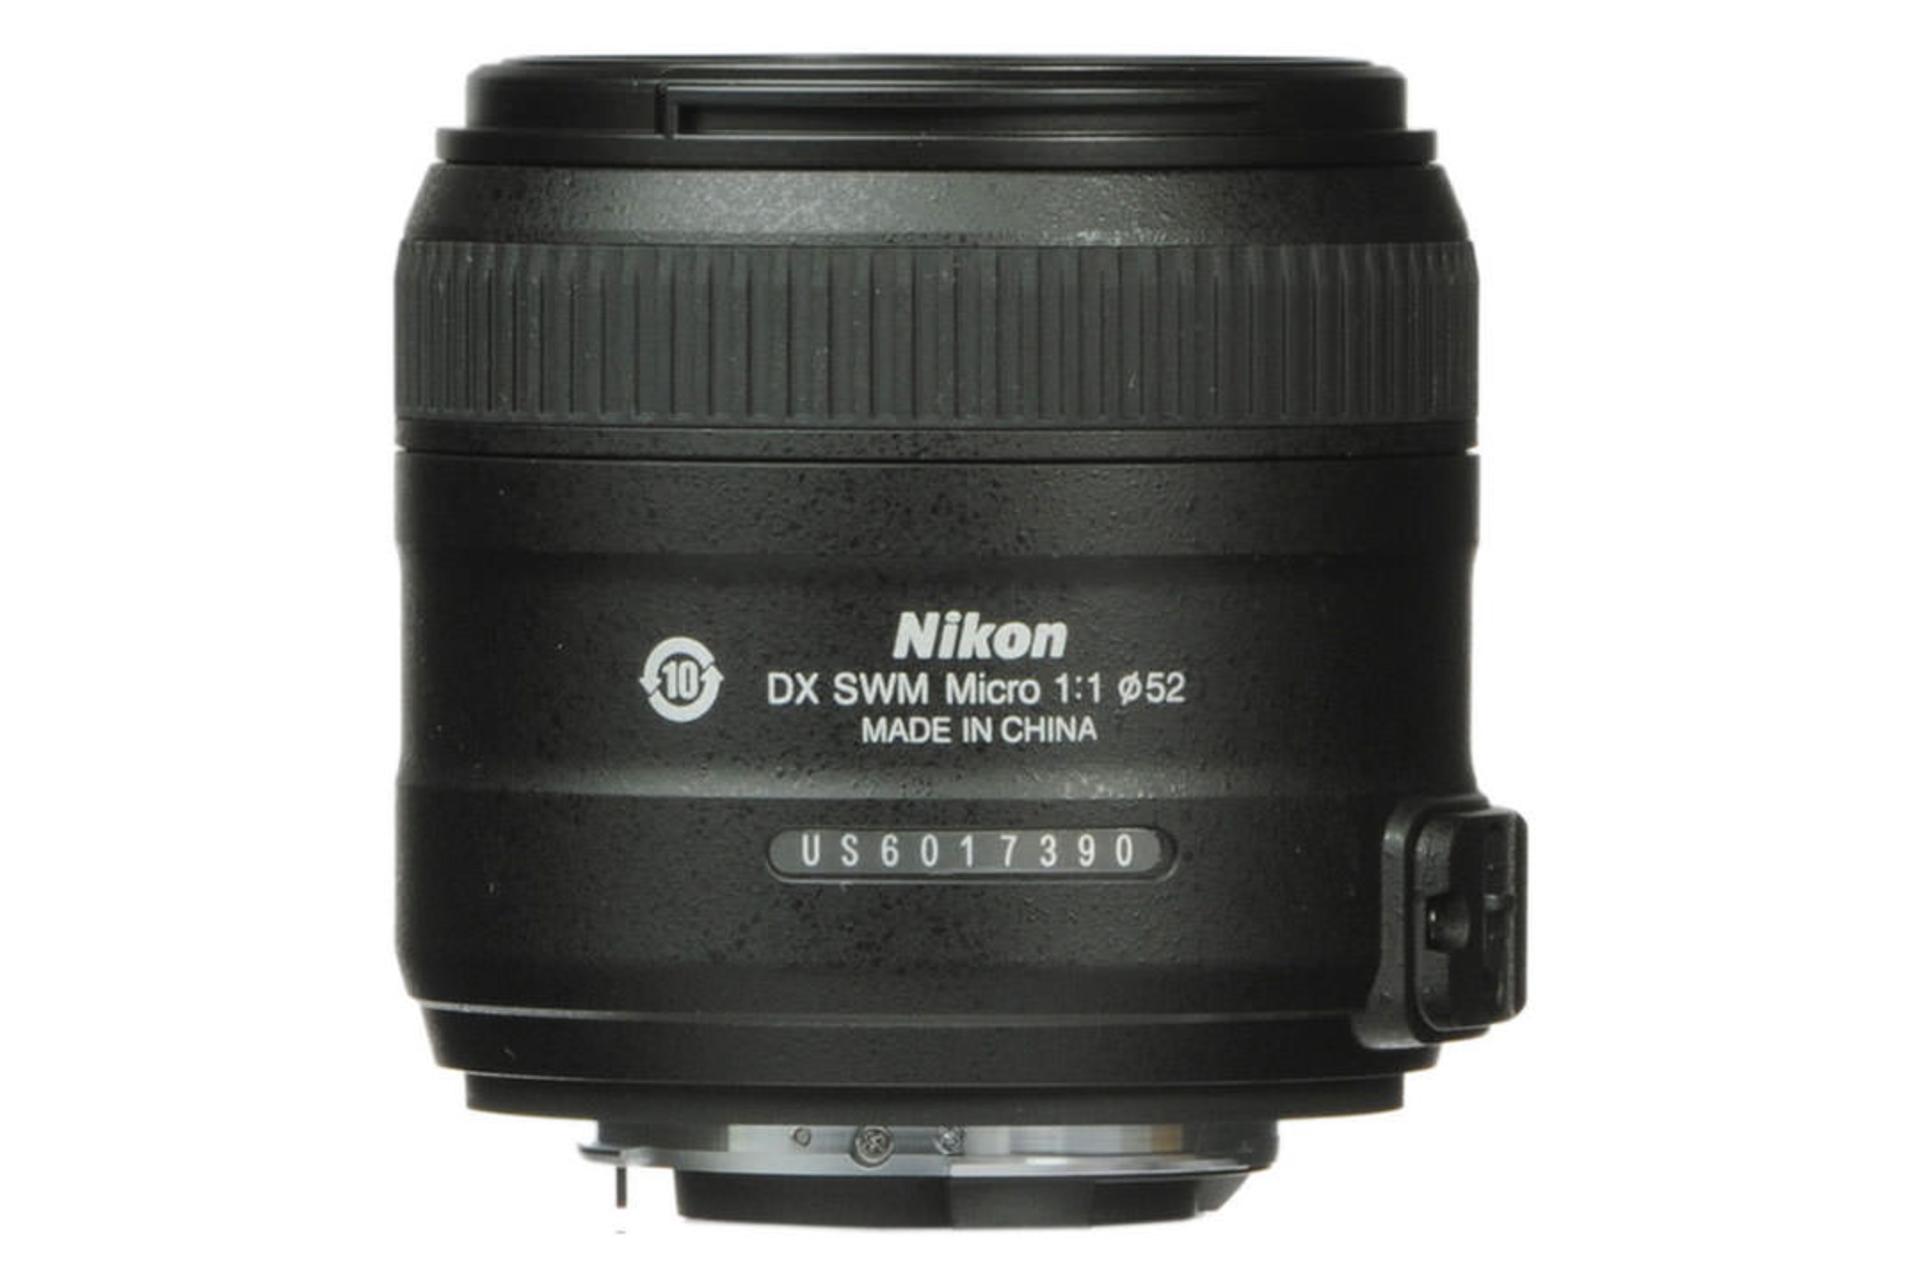 Nikon AF-S DX Micro Nikkor 40mm F2.8	